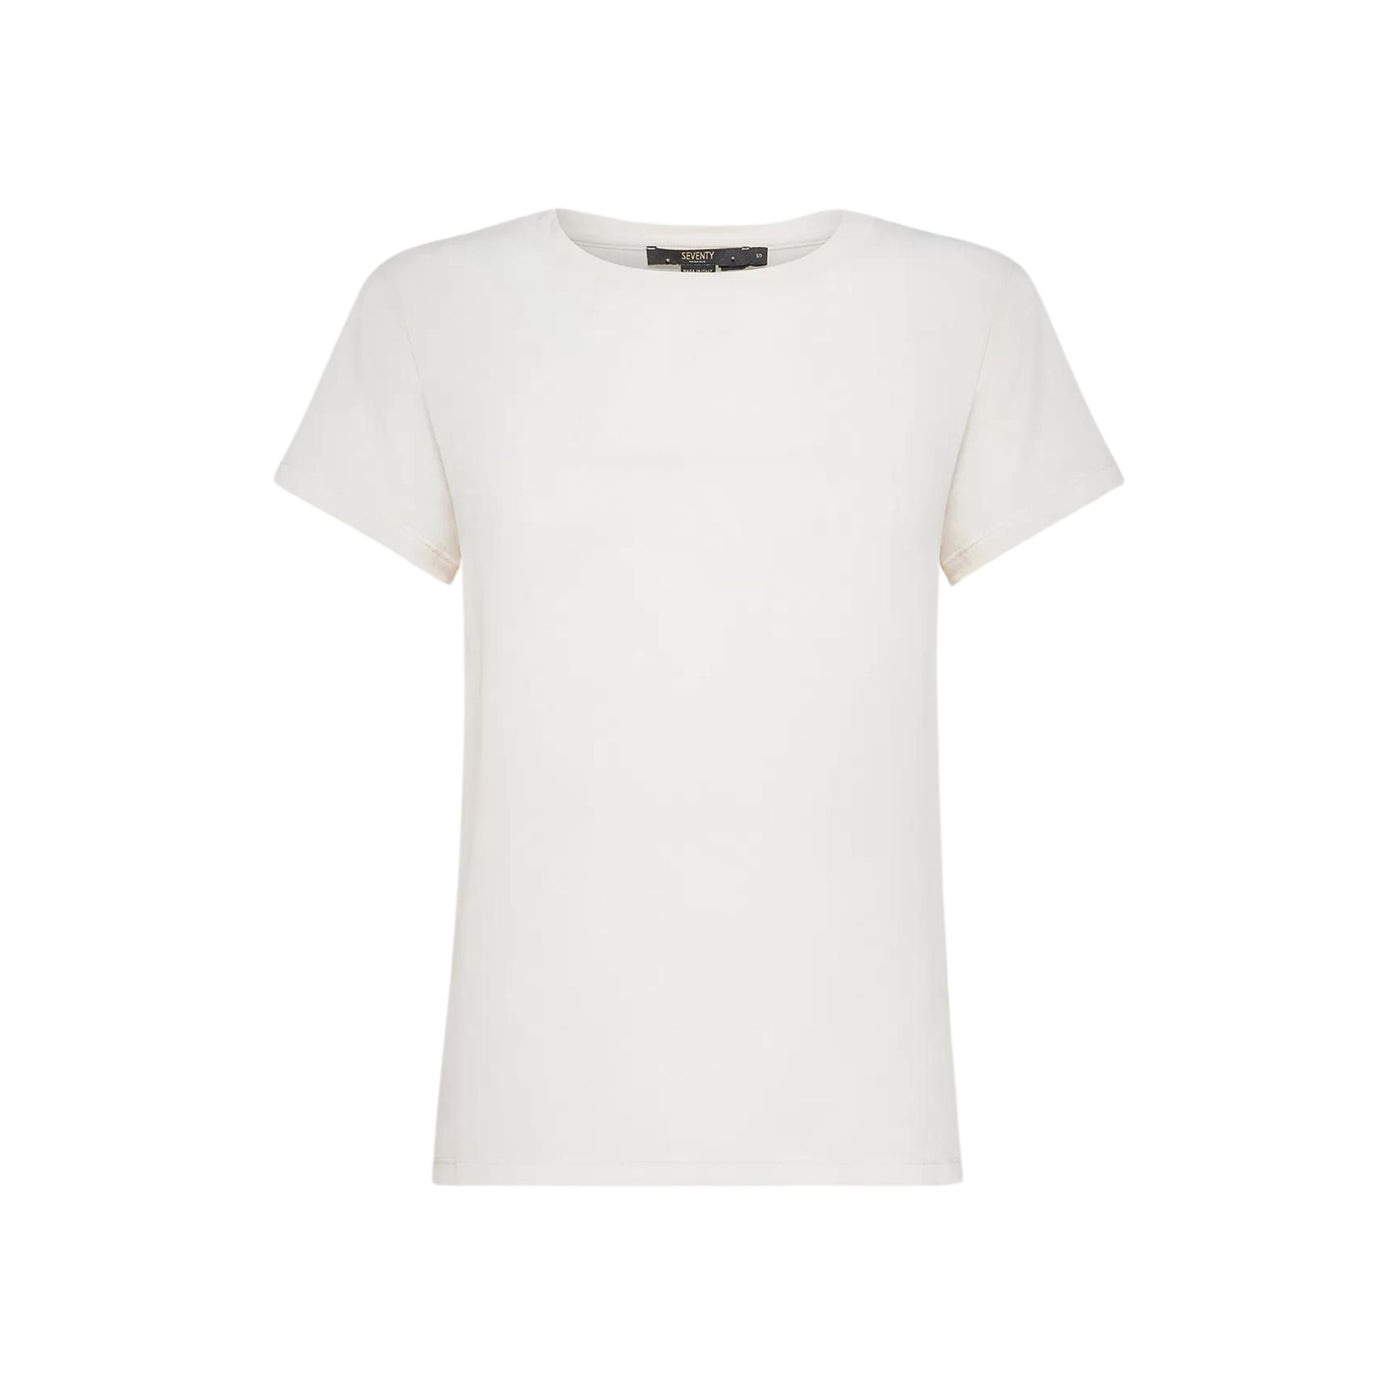 T-shirt Donna dalle linee classiche a maniche corte